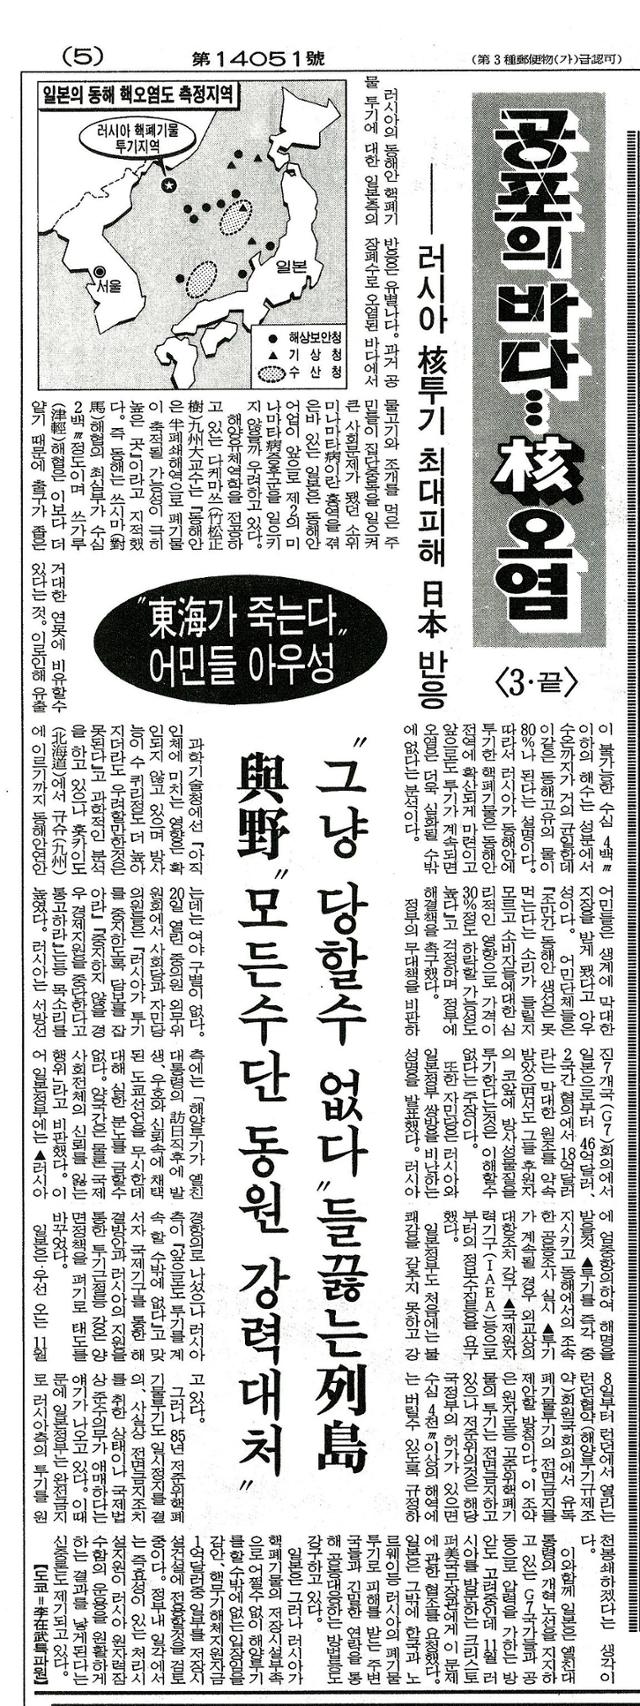 1993년 10월 23일 한국일보 기사. '러시아의 동해안 핵폐기물 투기에 대한 일본 측의 반응은 유별나다'는 문장으로 시작해, 당시 일본의 반응을 전하고 있다.